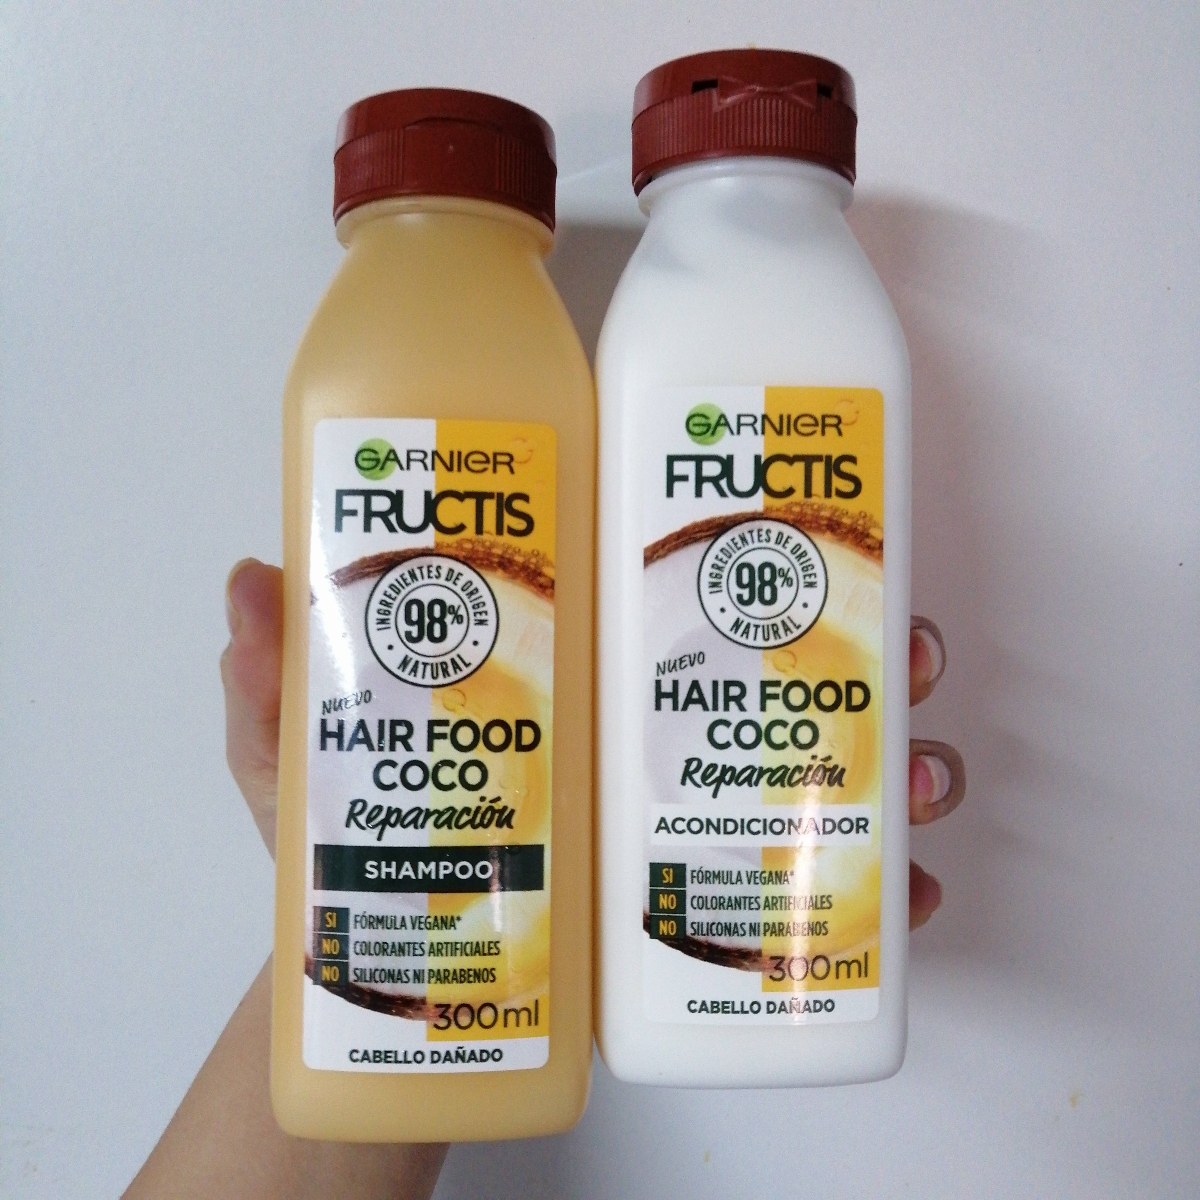 Garnier Hair Food Coco Shampoo Review | abillion